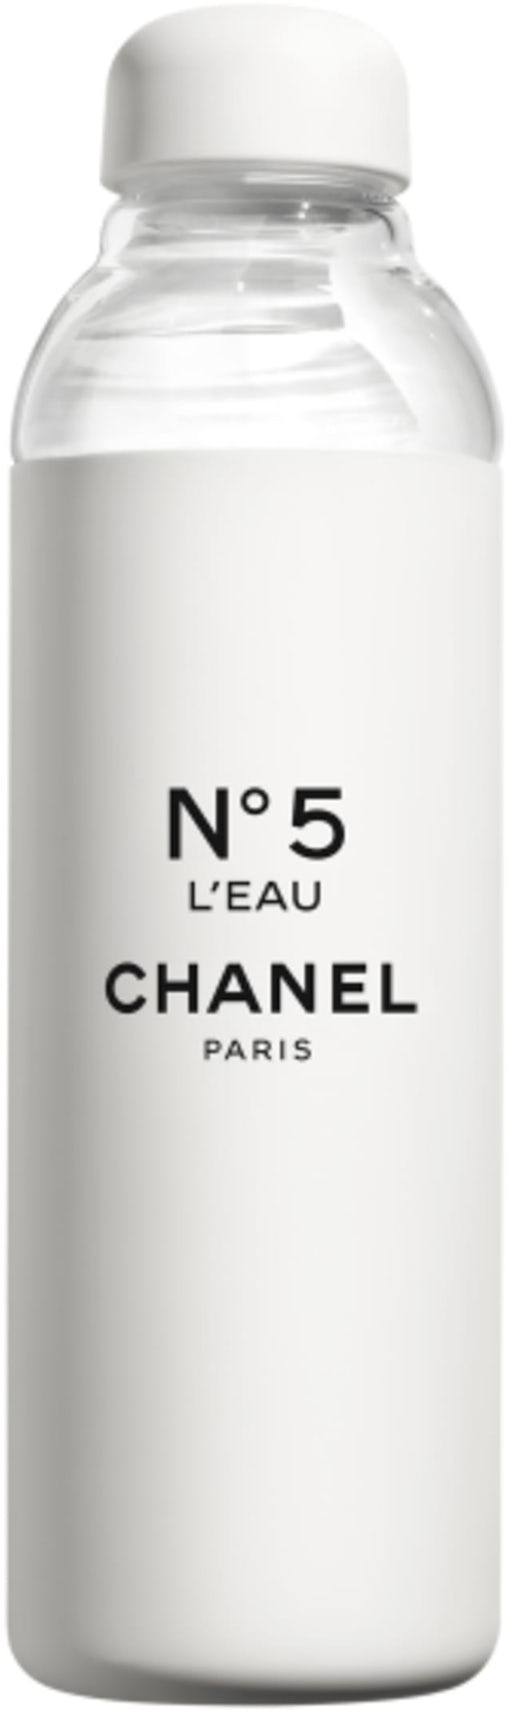 https://images.stockx.com/images/Chanel-Paris-No-5-Water-Bottle.jpg?fit=fill&bg=FFFFFF&w=1200&h=857&fm=jpg&auto=compress&dpr=2&trim=color&trimcolor=ffffff&updated_at=1628112227&q=60